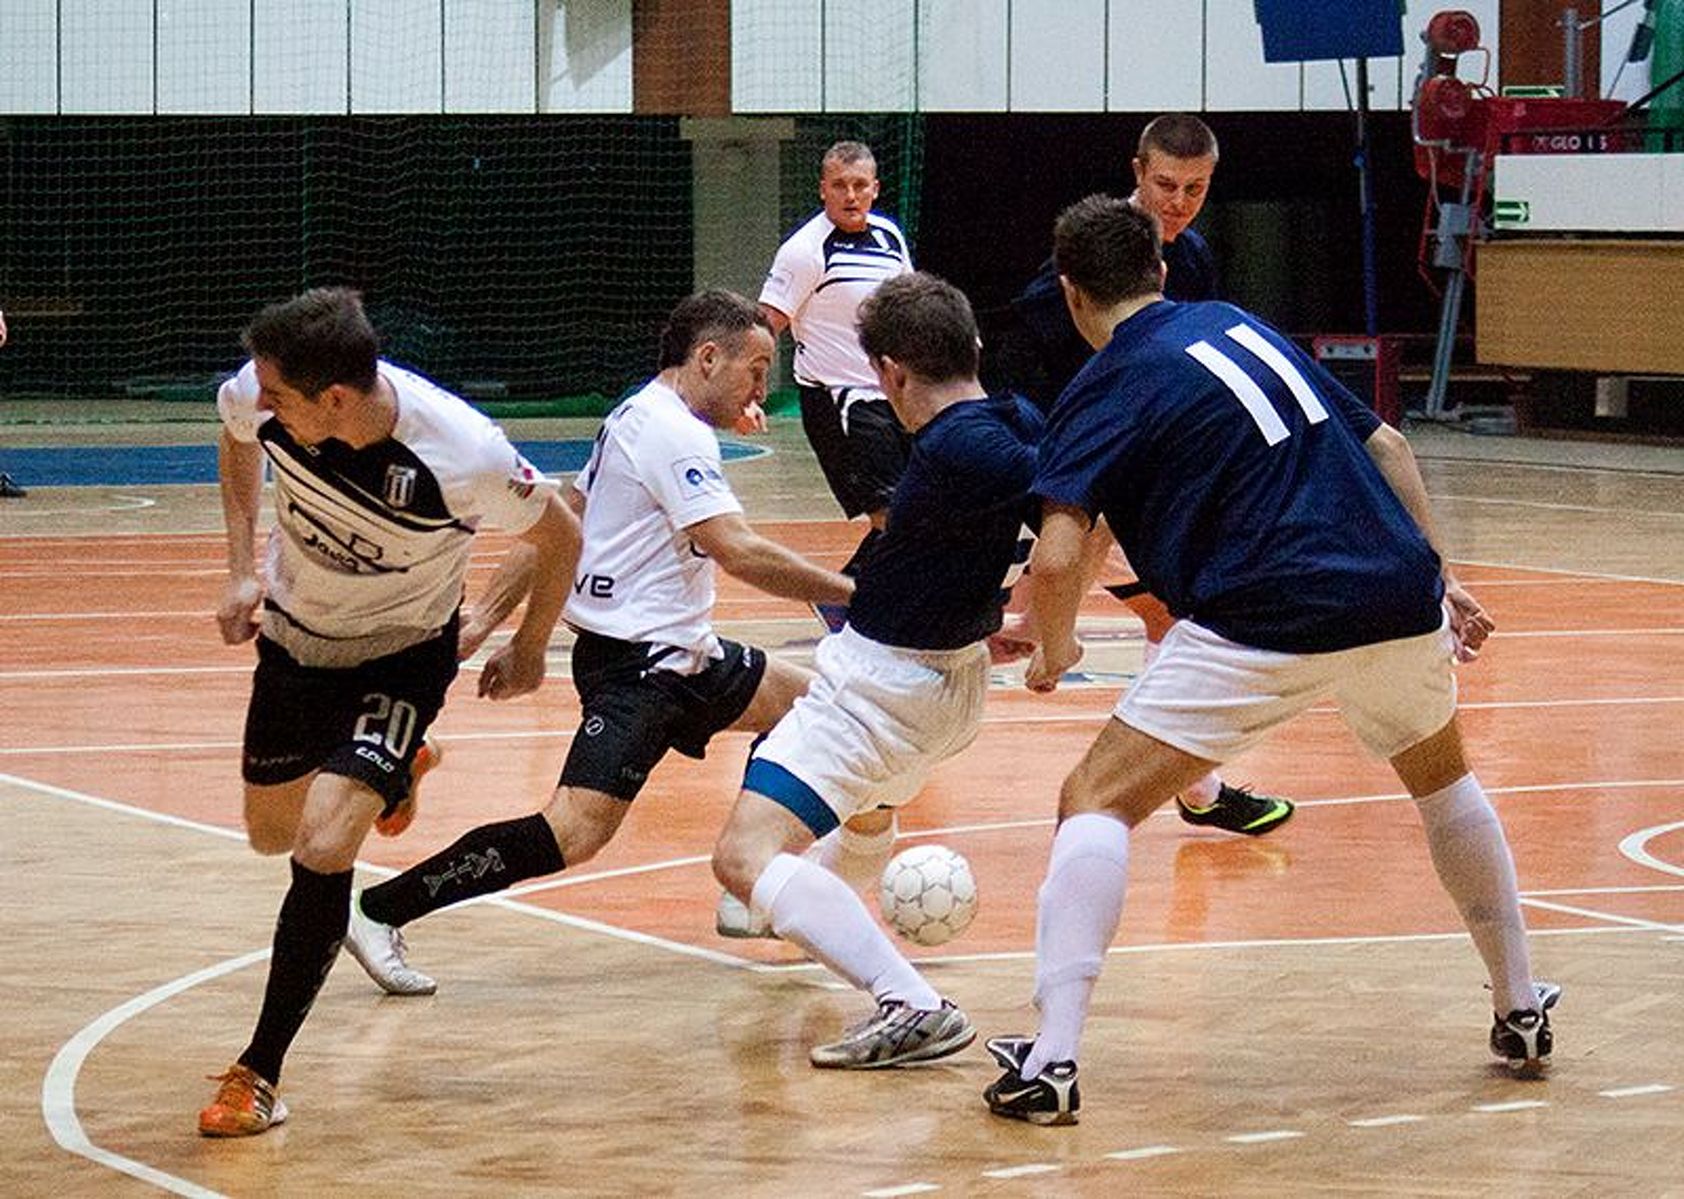 Futsalowy Puchar Polski w Olsztynie. Fot. Artur Szczepański